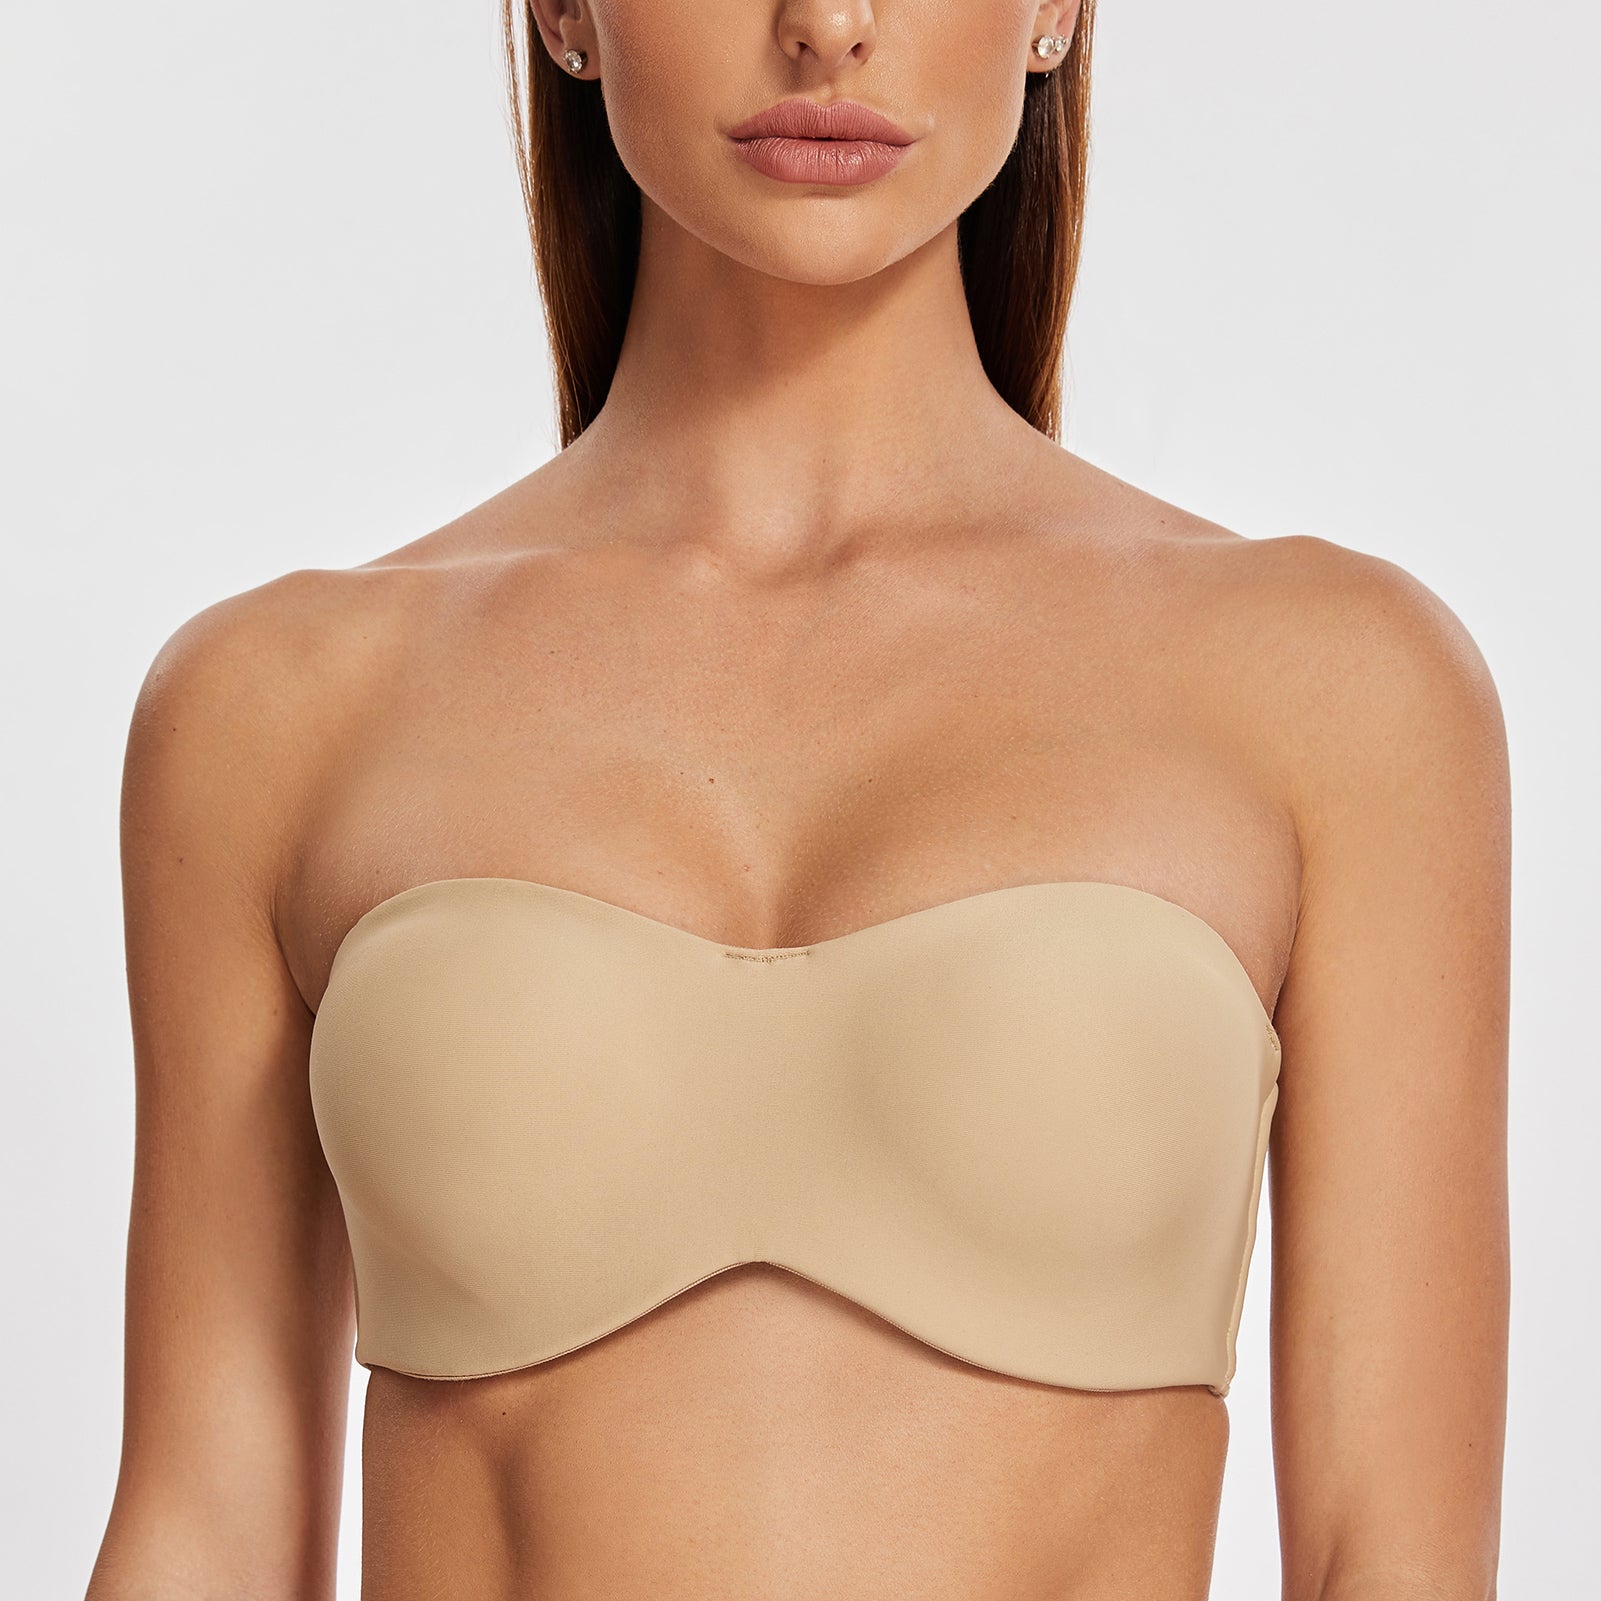 MELENECA Women's Strapless Bra for Large Bust Minimizer